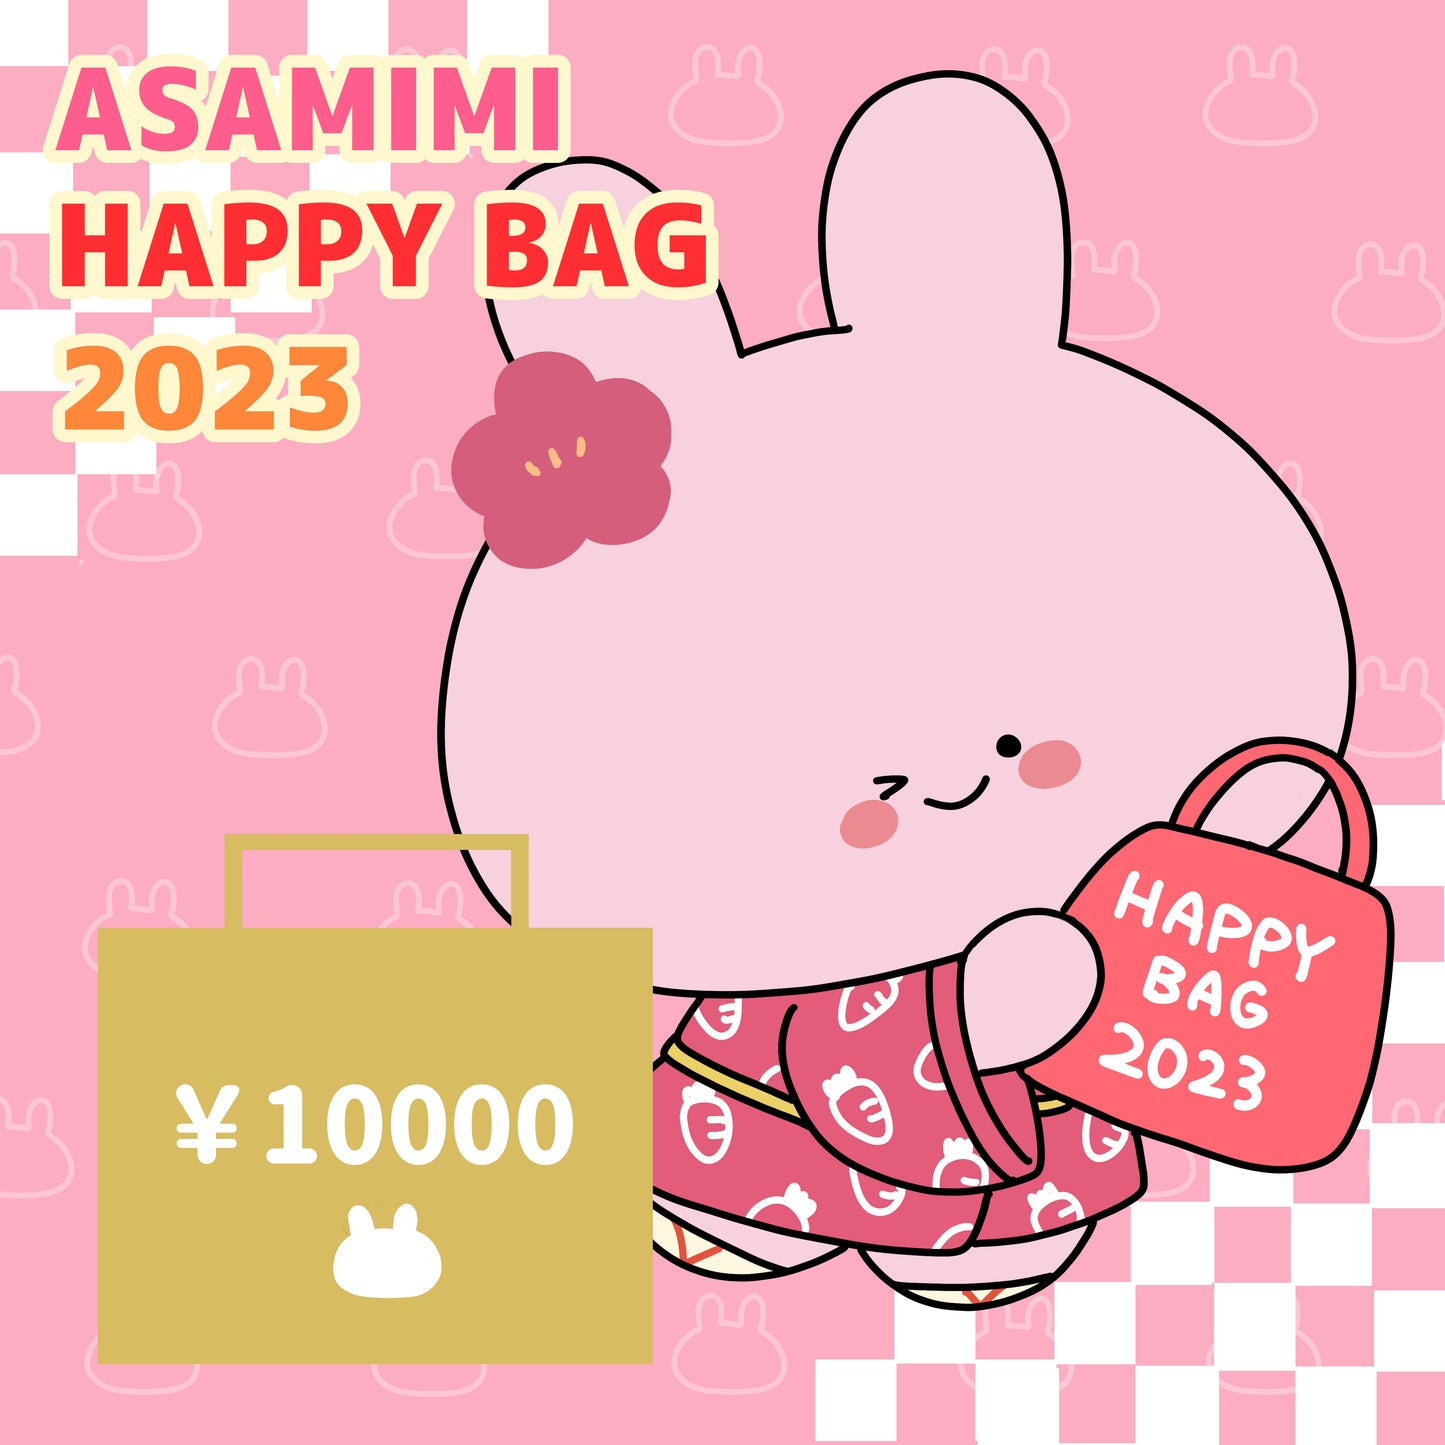 [Asamimi-chan] SAC HEUREUX ASAMIMI (10 000 ¥)